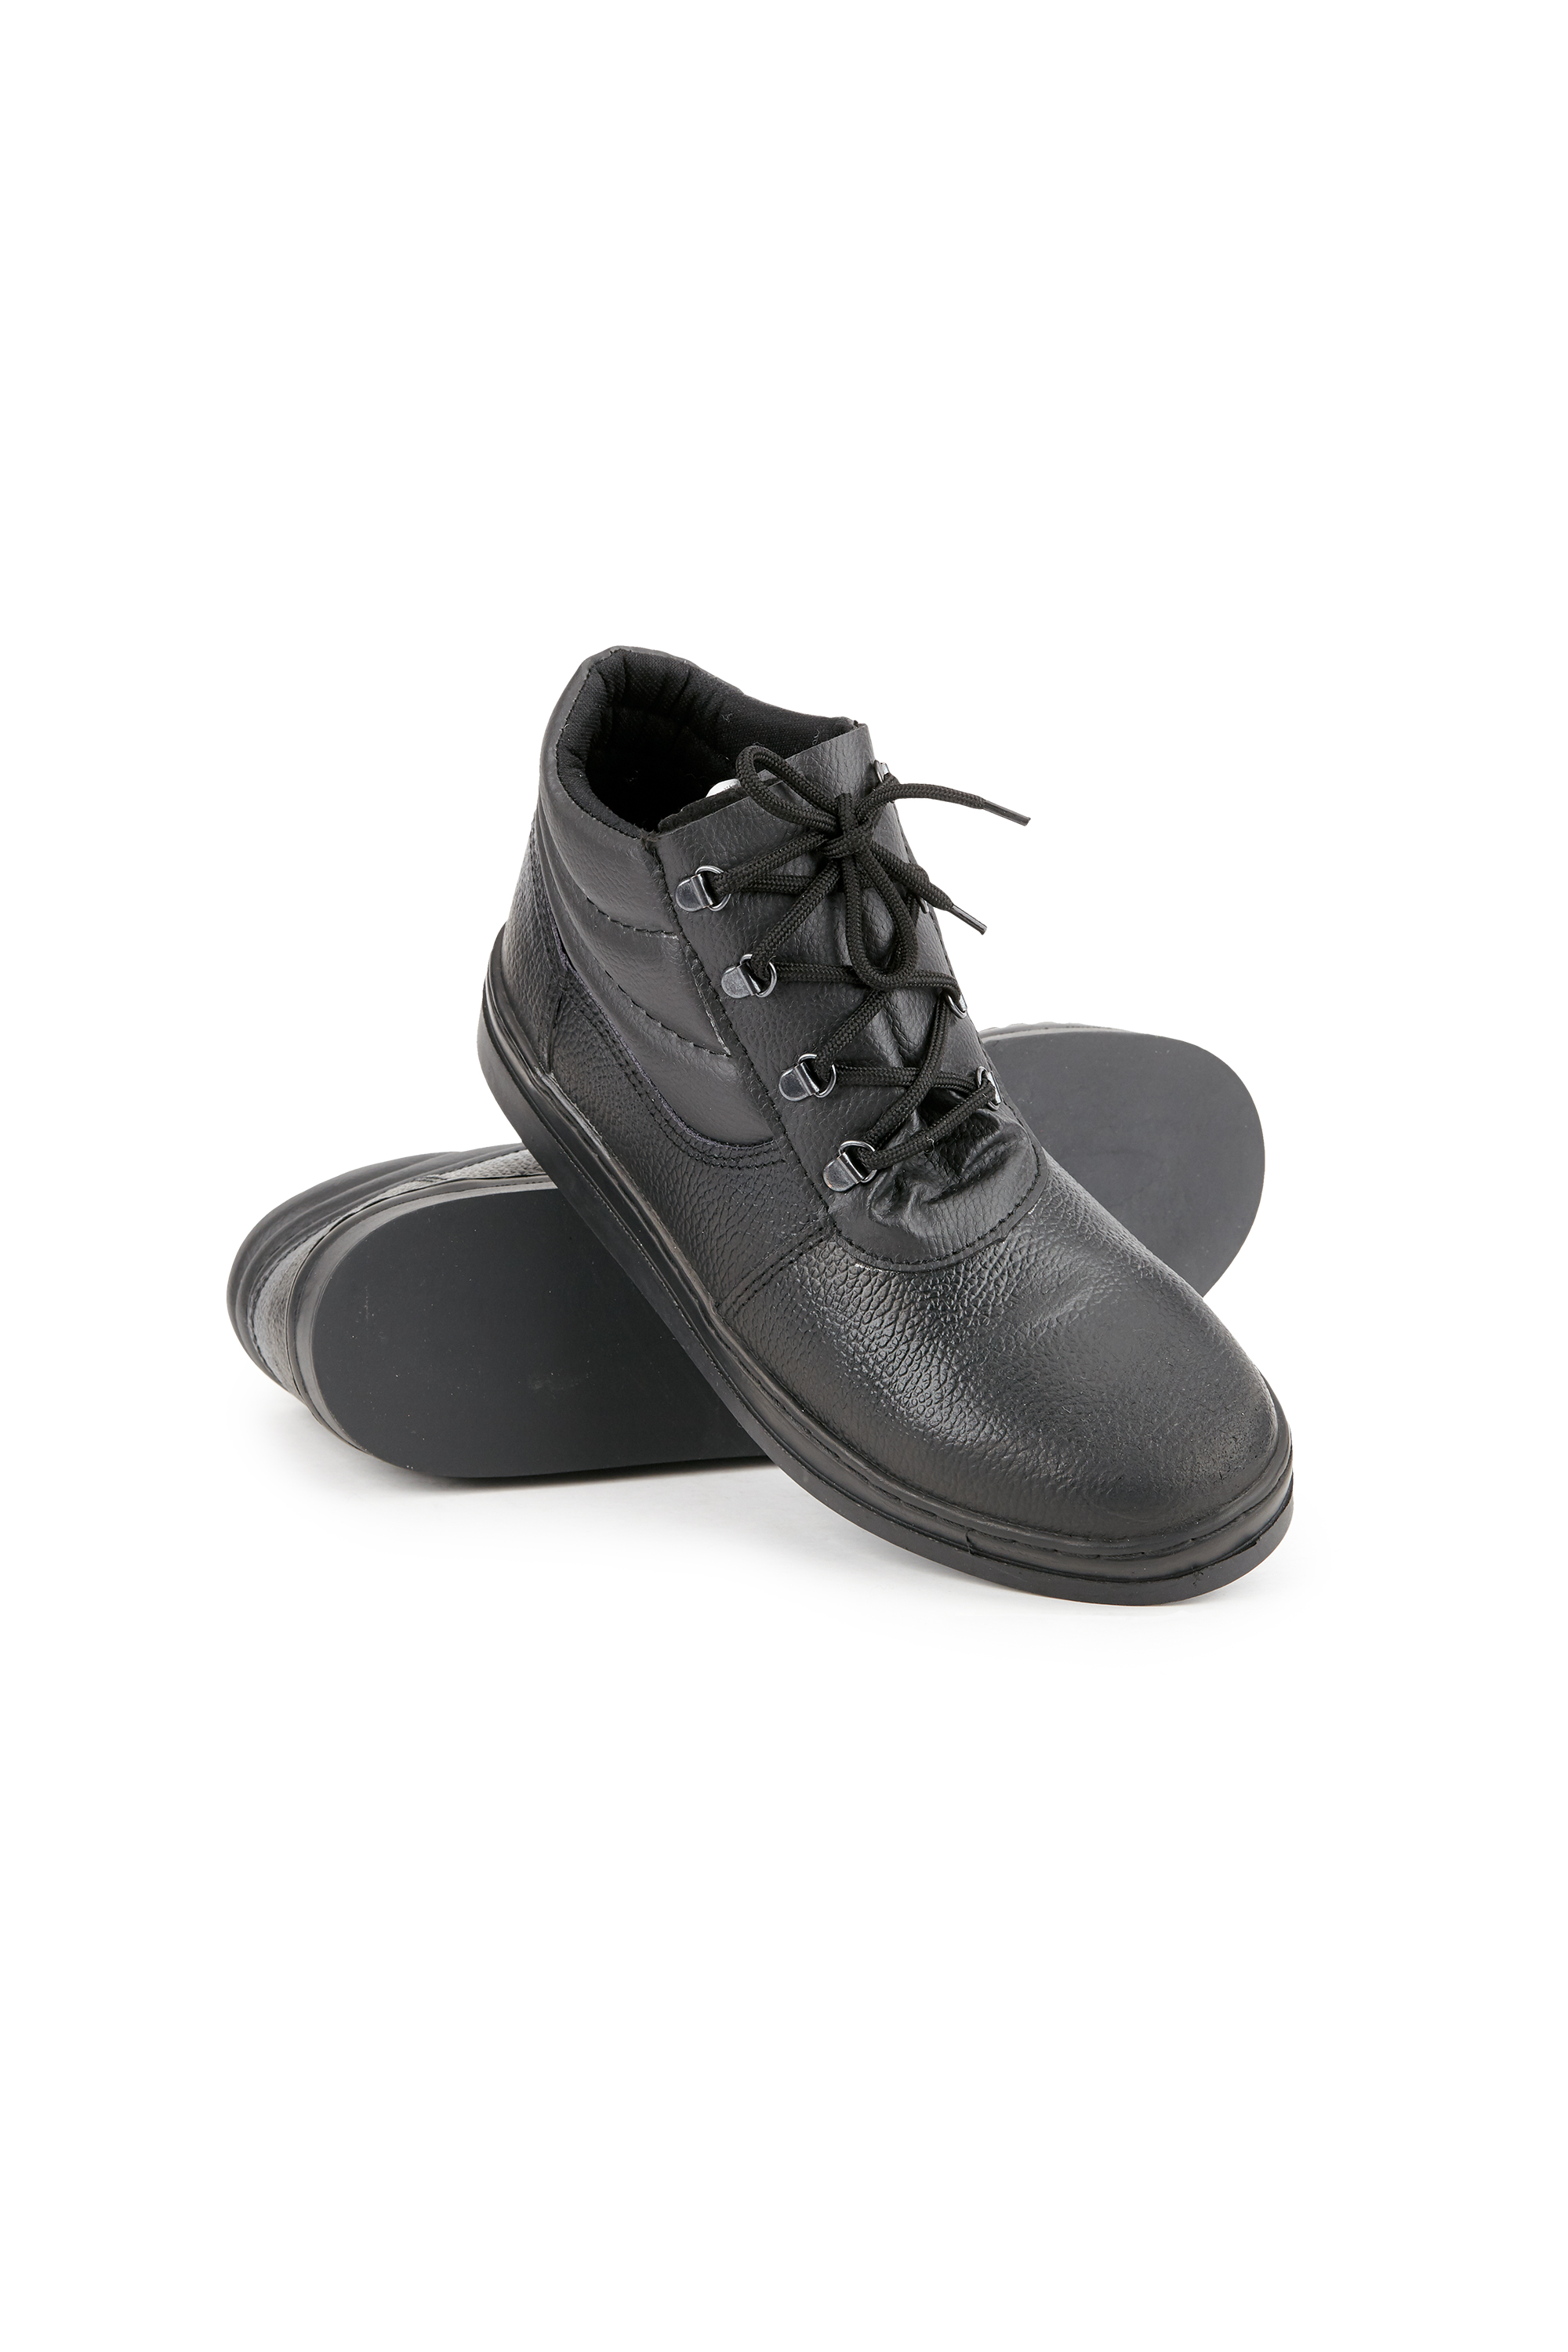 Ботинки 'Асфальтоукладчик', мужские черные